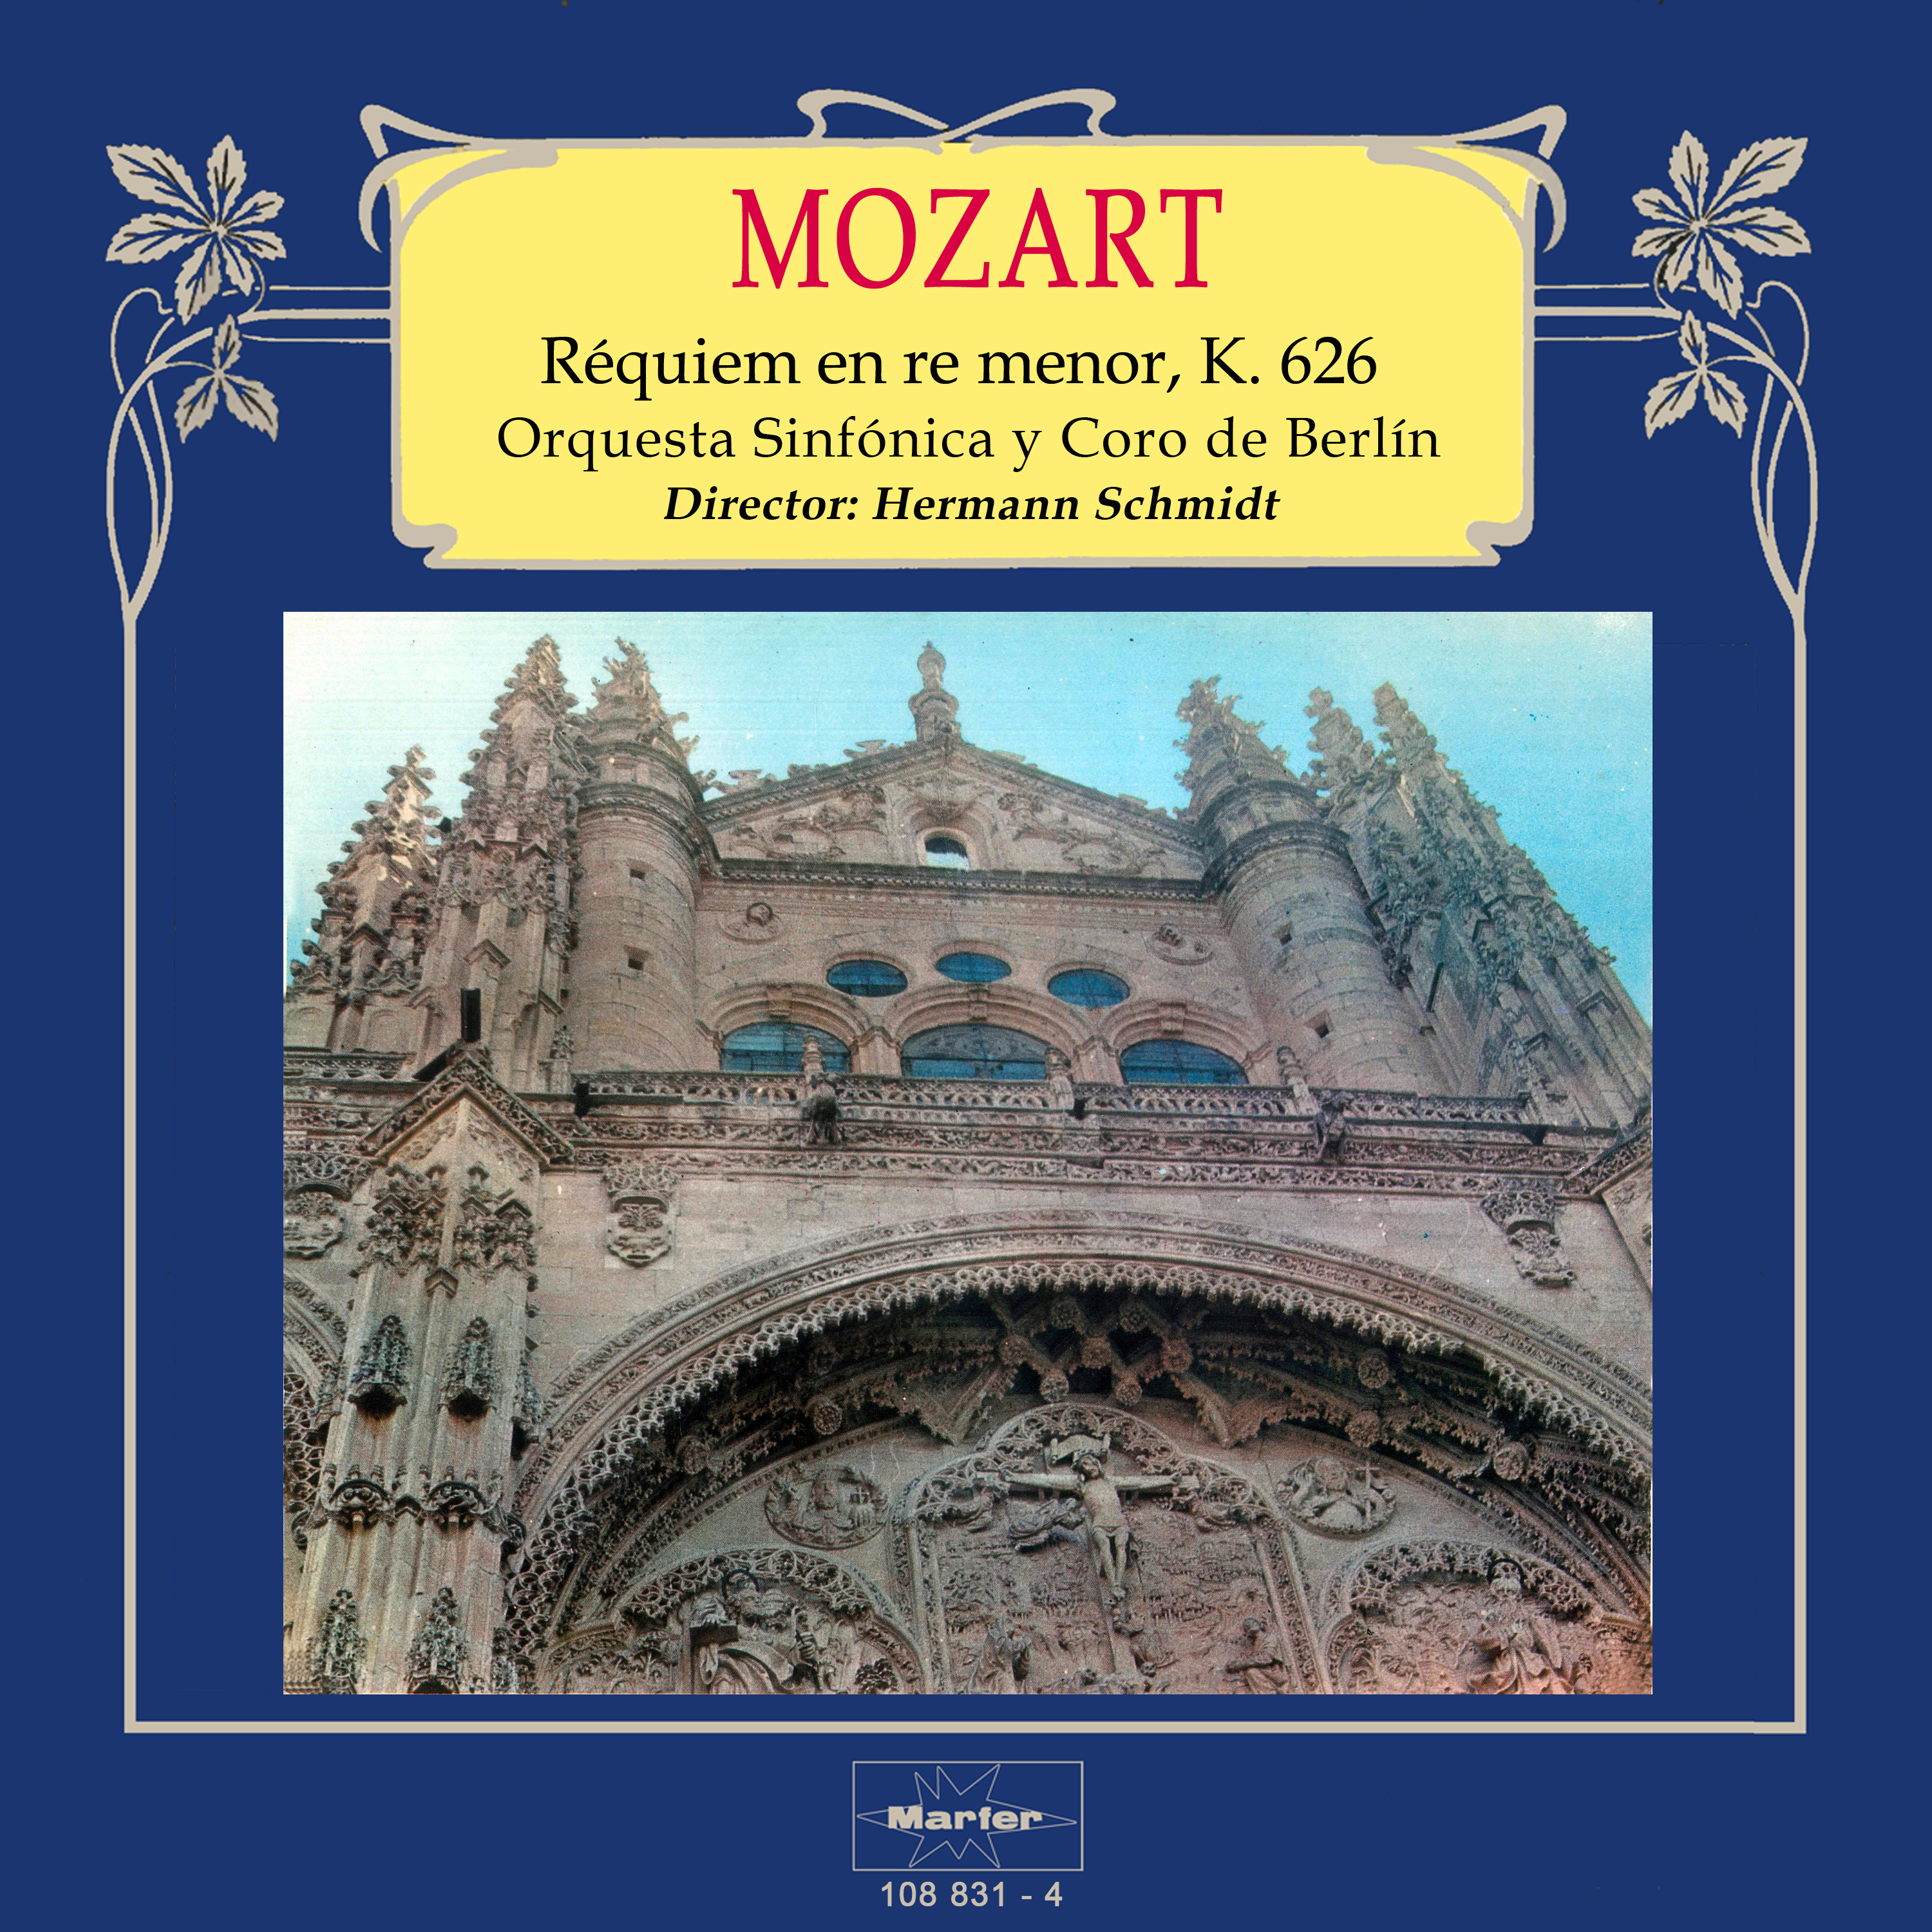 Requiem in D Minor, K. 626: VIII. Communio, Lux aeterna